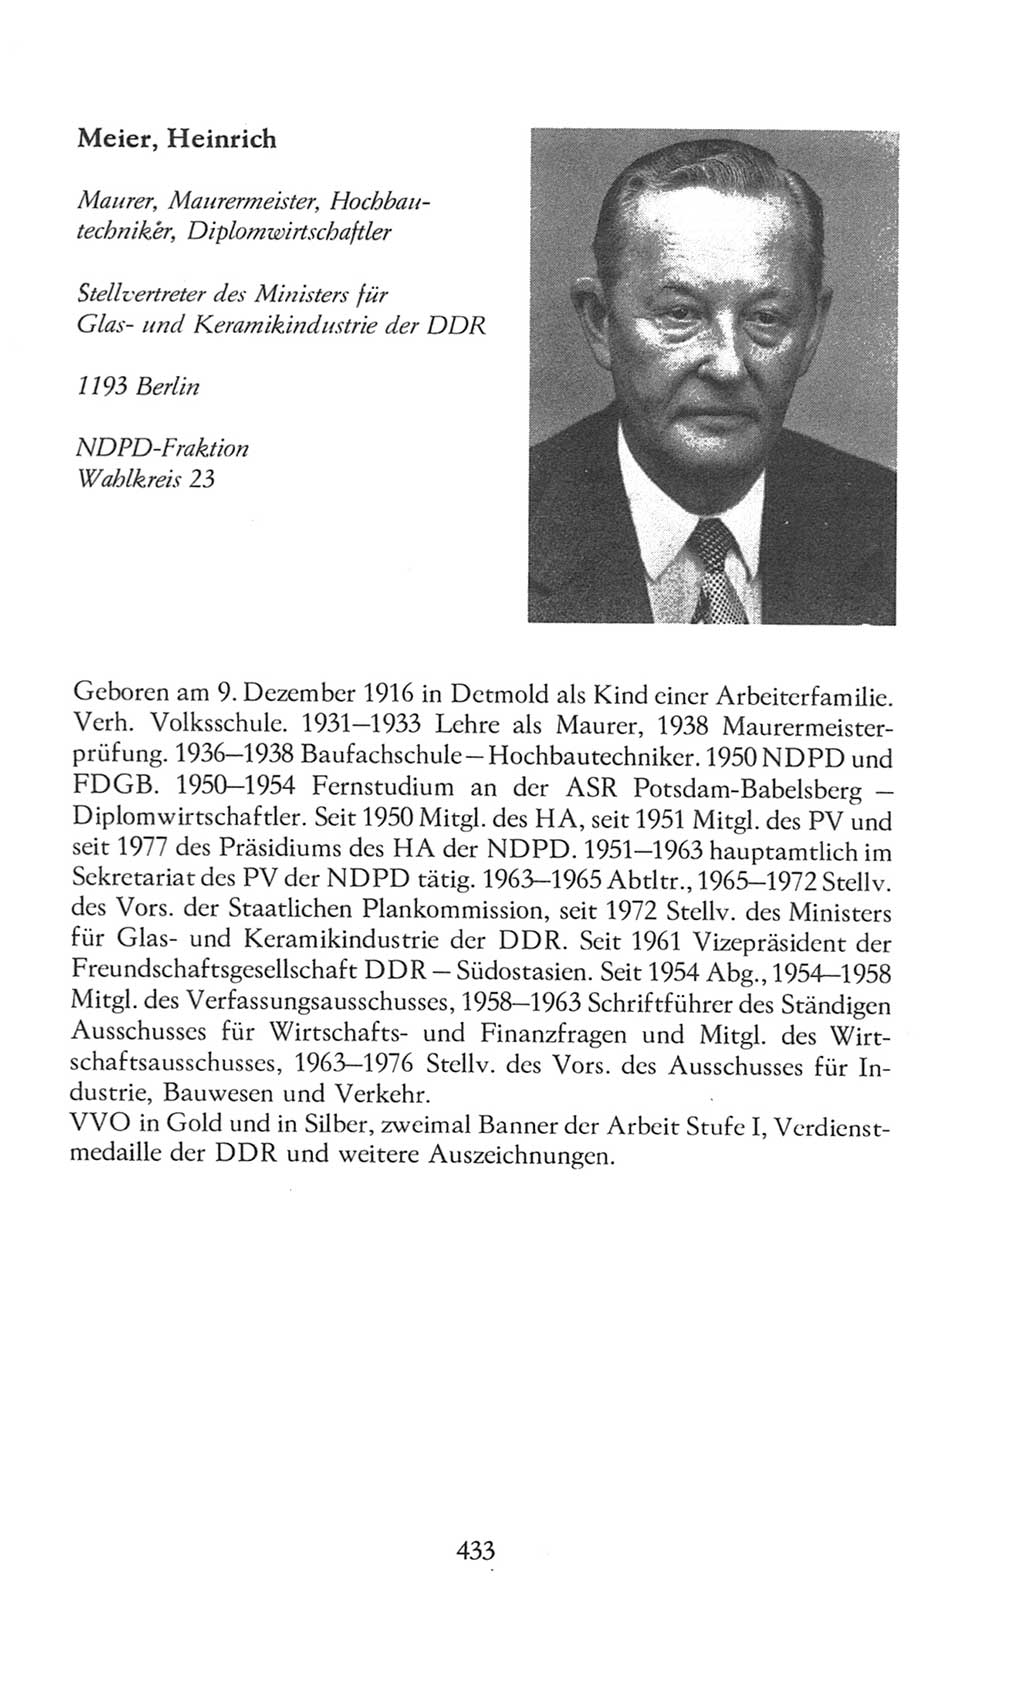 Volkskammer (VK) der Deutschen Demokratischen Republik (DDR), 8. Wahlperiode 1981-1986, Seite 433 (VK. DDR 8. WP. 1981-1986, S. 433)